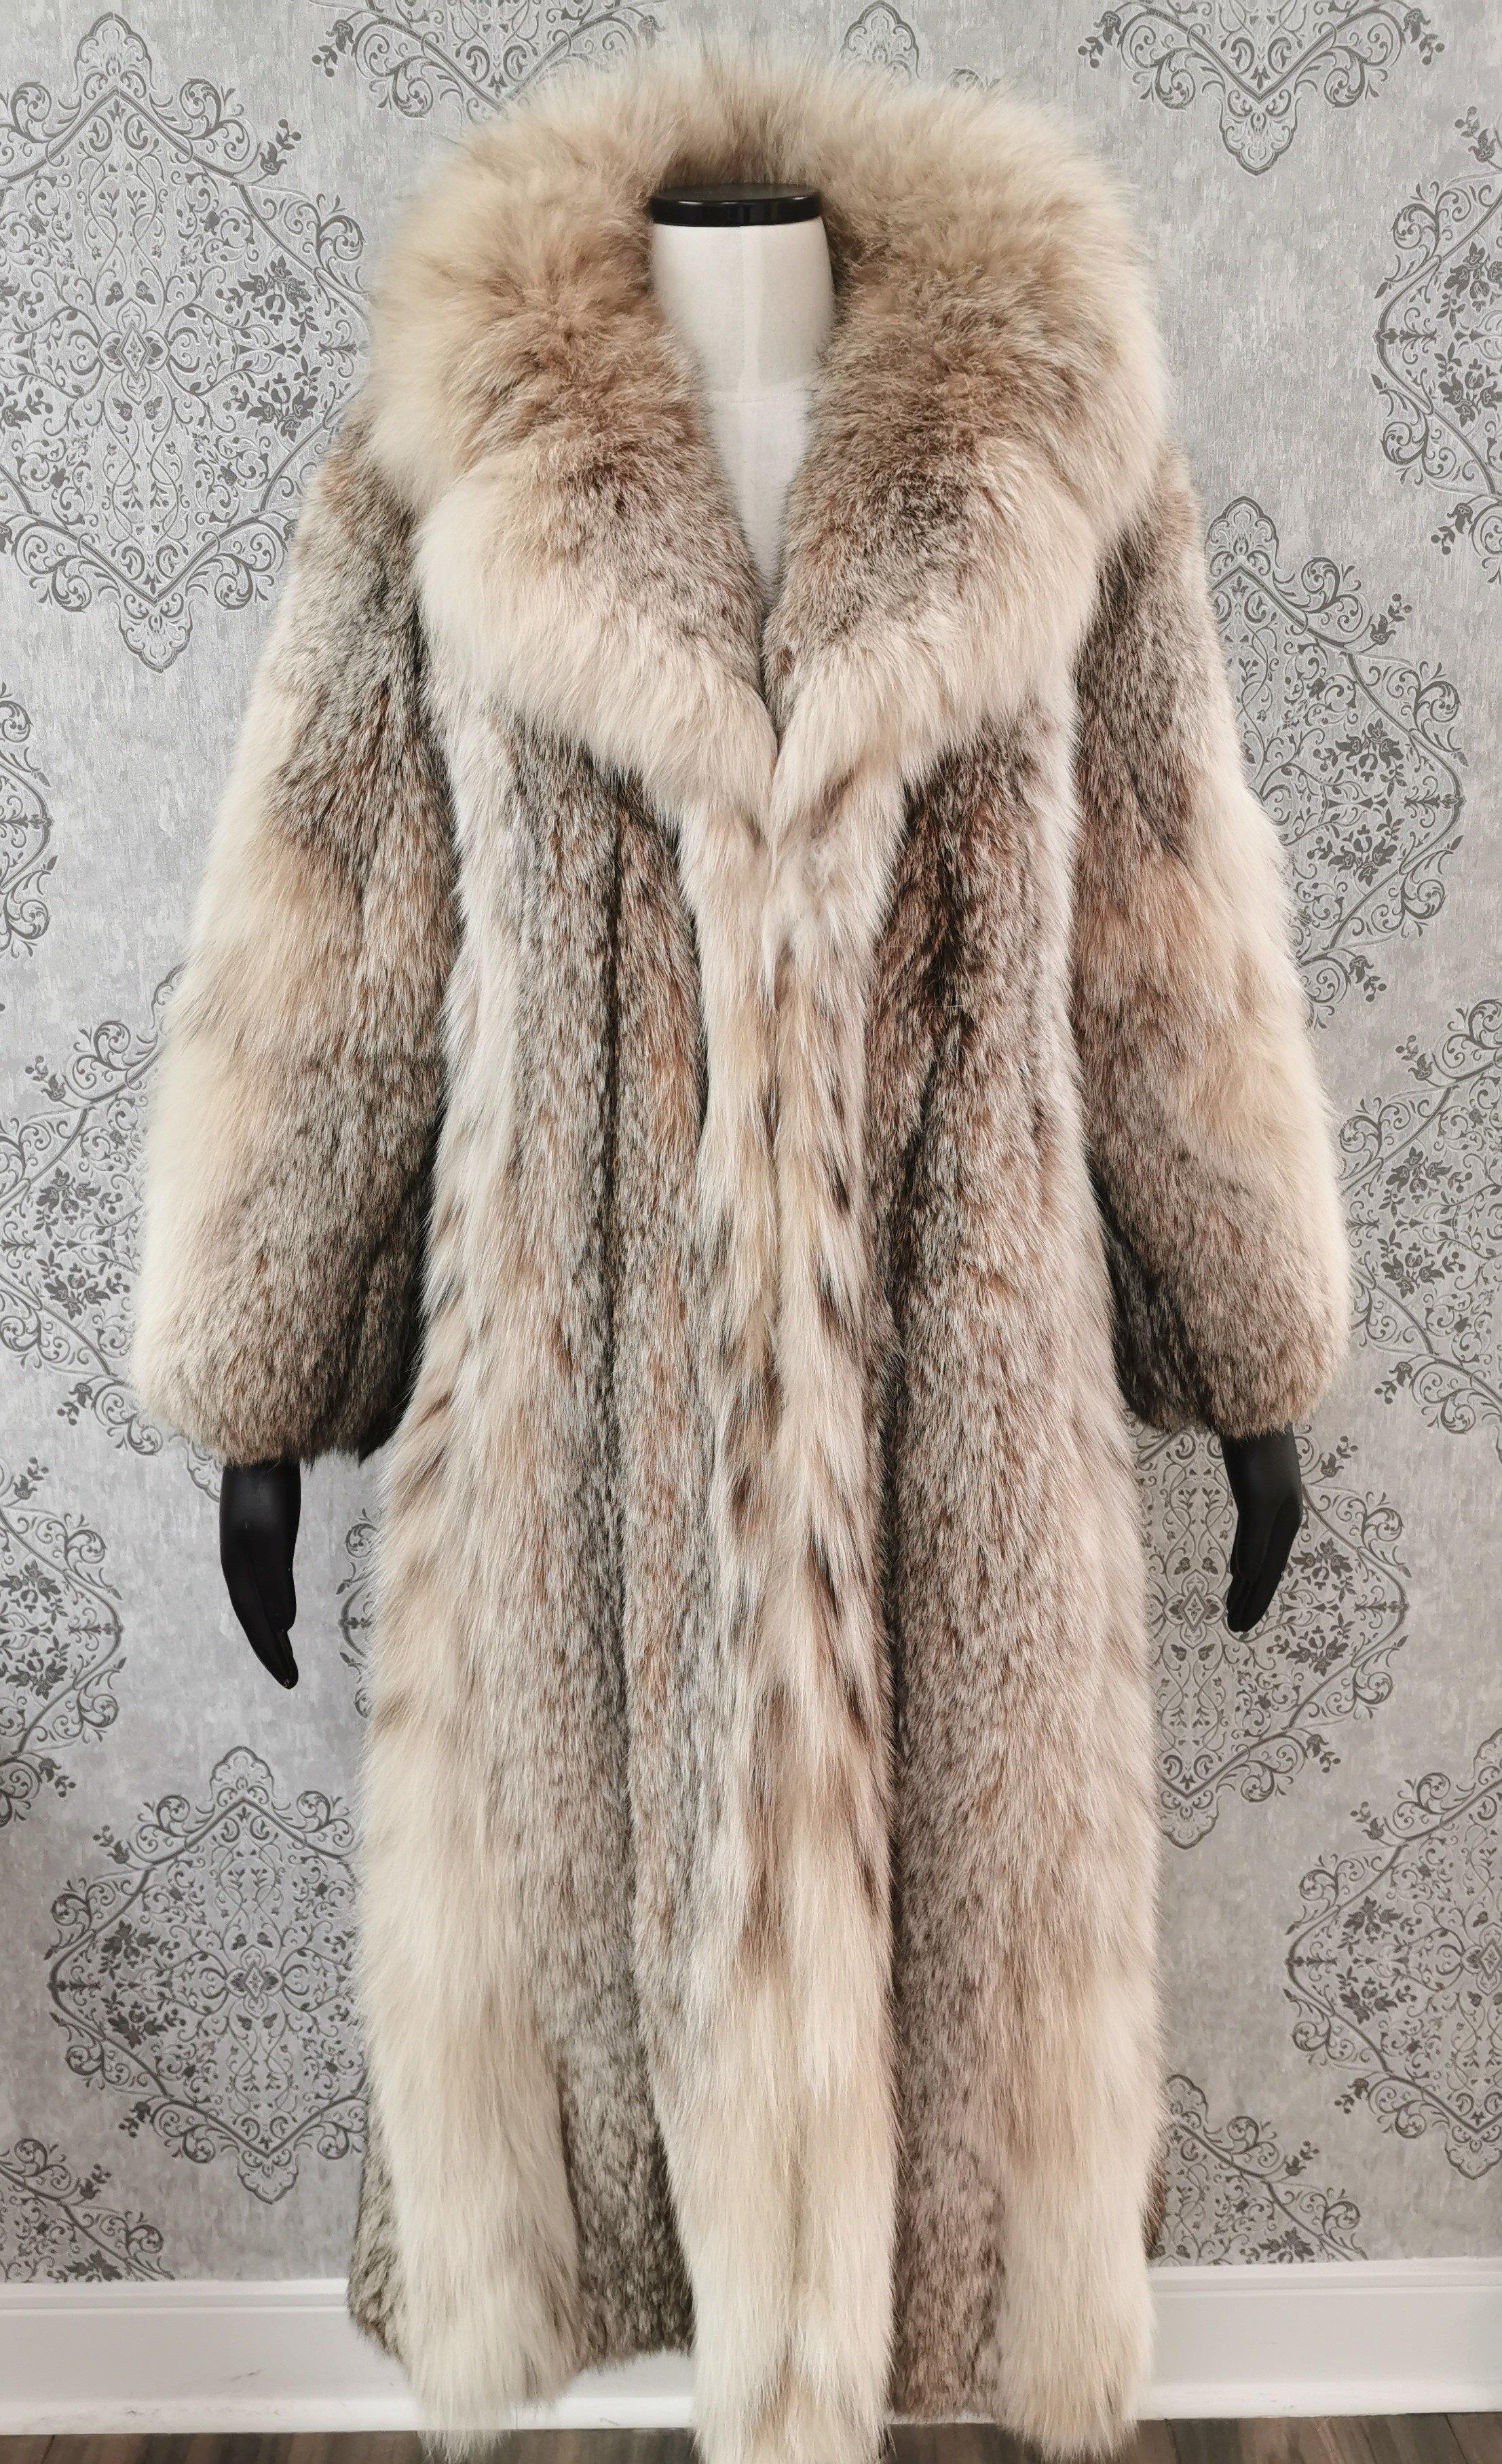 Manteau de fourrure de lynx canadien (Taille 12 Medium) neuf et en bon état.

Elegant col portrait, manches droites, deux poches dans les coutures latérales et doublure en satin blanc.

Fabriqué aux États-Unis

Mesures
-Longueur 48
-Dos en travers